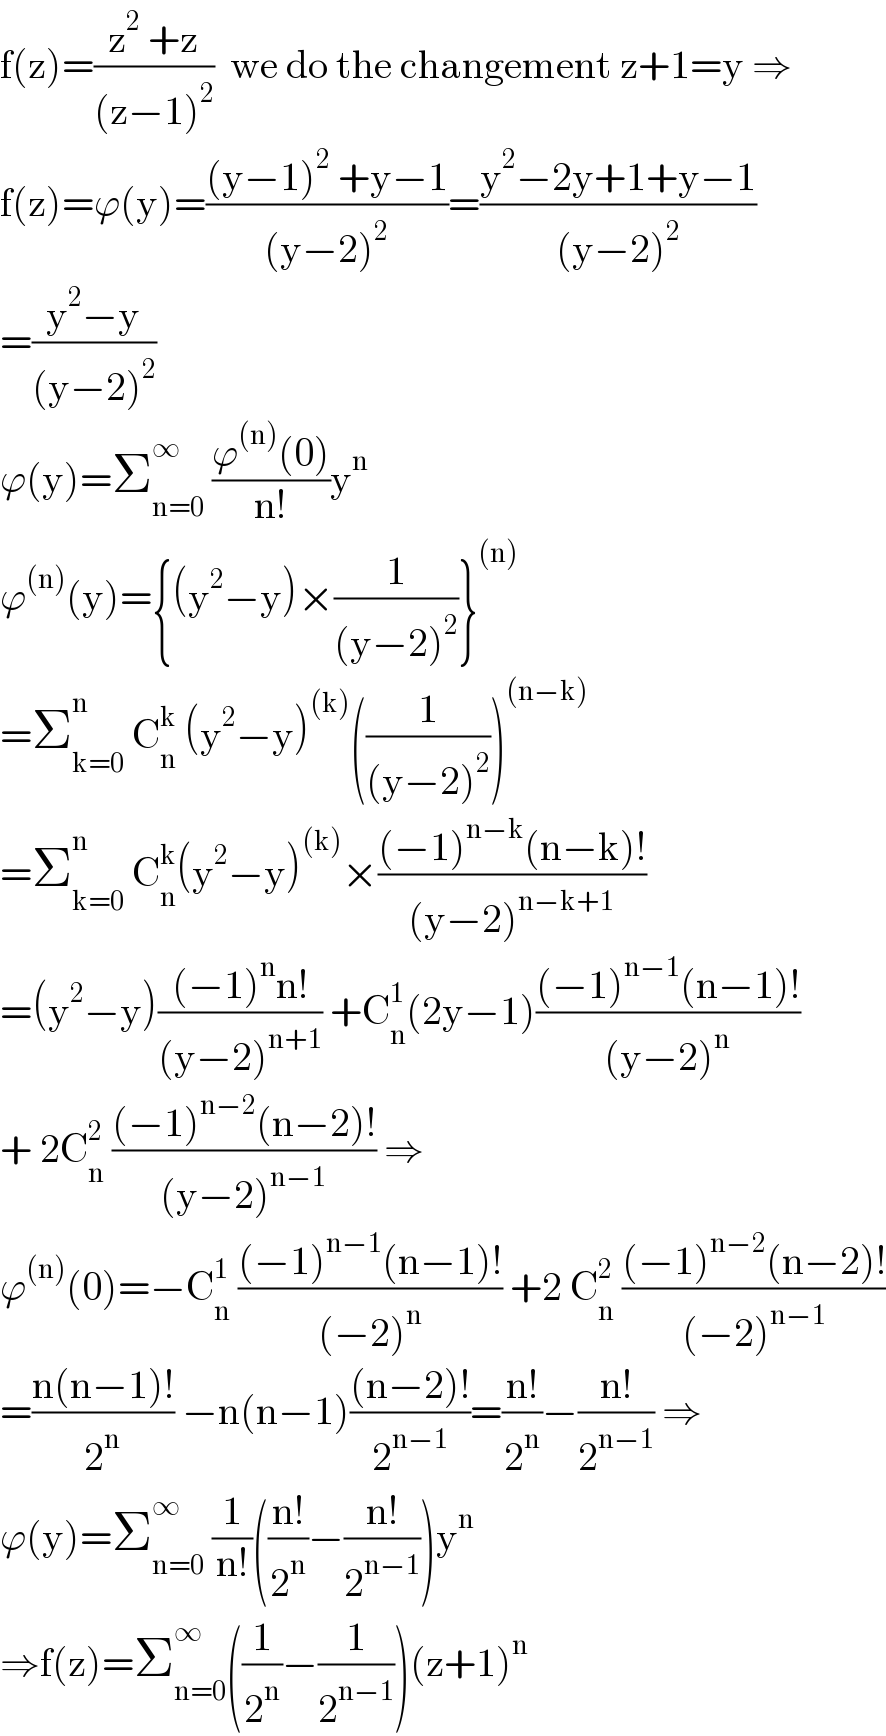 f(z)=((z^2  +z)/((z−1)^2 ))  we do the changement z+1=y ⇒  f(z)=ϕ(y)=(((y−1)^2  +y−1)/((y−2)^2 ))=((y^2 −2y+1+y−1)/((y−2)^2 ))  =((y^2 −y)/((y−2)^2 ))  ϕ(y)=Σ_(n=0) ^∞  ((ϕ^((n)) (0))/(n!))y^n   ϕ^((n)) (y)={(y^2 −y)×(1/((y−2)^2 ))}^((n))   =Σ_(k=0) ^n  C_n ^k  (y^2 −y)^((k)) ((1/((y−2)^2 )))^((n−k))   =Σ_(k=0) ^n  C_n ^k (y^2 −y)^((k)) ×(((−1)^(n−k) (n−k)!)/((y−2)^(n−k+1) ))  =(y^2 −y)(((−1)^n n!)/((y−2)^(n+1) )) +C_n ^1 (2y−1)(((−1)^(n−1) (n−1)!)/((y−2)^n ))  + 2C_n ^2  (((−1)^(n−2) (n−2)!)/((y−2)^(n−1) )) ⇒  ϕ^((n)) (0)=−C_n ^1  (((−1)^(n−1) (n−1)!)/((−2)^n )) +2 C_n ^2  (((−1)^(n−2) (n−2)!)/((−2)^(n−1) ))  =((n(n−1)!)/2^n ) −n(n−1)(((n−2)!)/2^(n−1) )=((n!)/2^n )−((n!)/2^(n−1) ) ⇒  ϕ(y)=Σ_(n=0) ^∞  (1/(n!))(((n!)/2^n )−((n!)/2^(n−1) ))y^n   ⇒f(z)=Σ_(n=0) ^∞ ((1/2^n )−(1/2^(n−1) ))(z+1)^n   